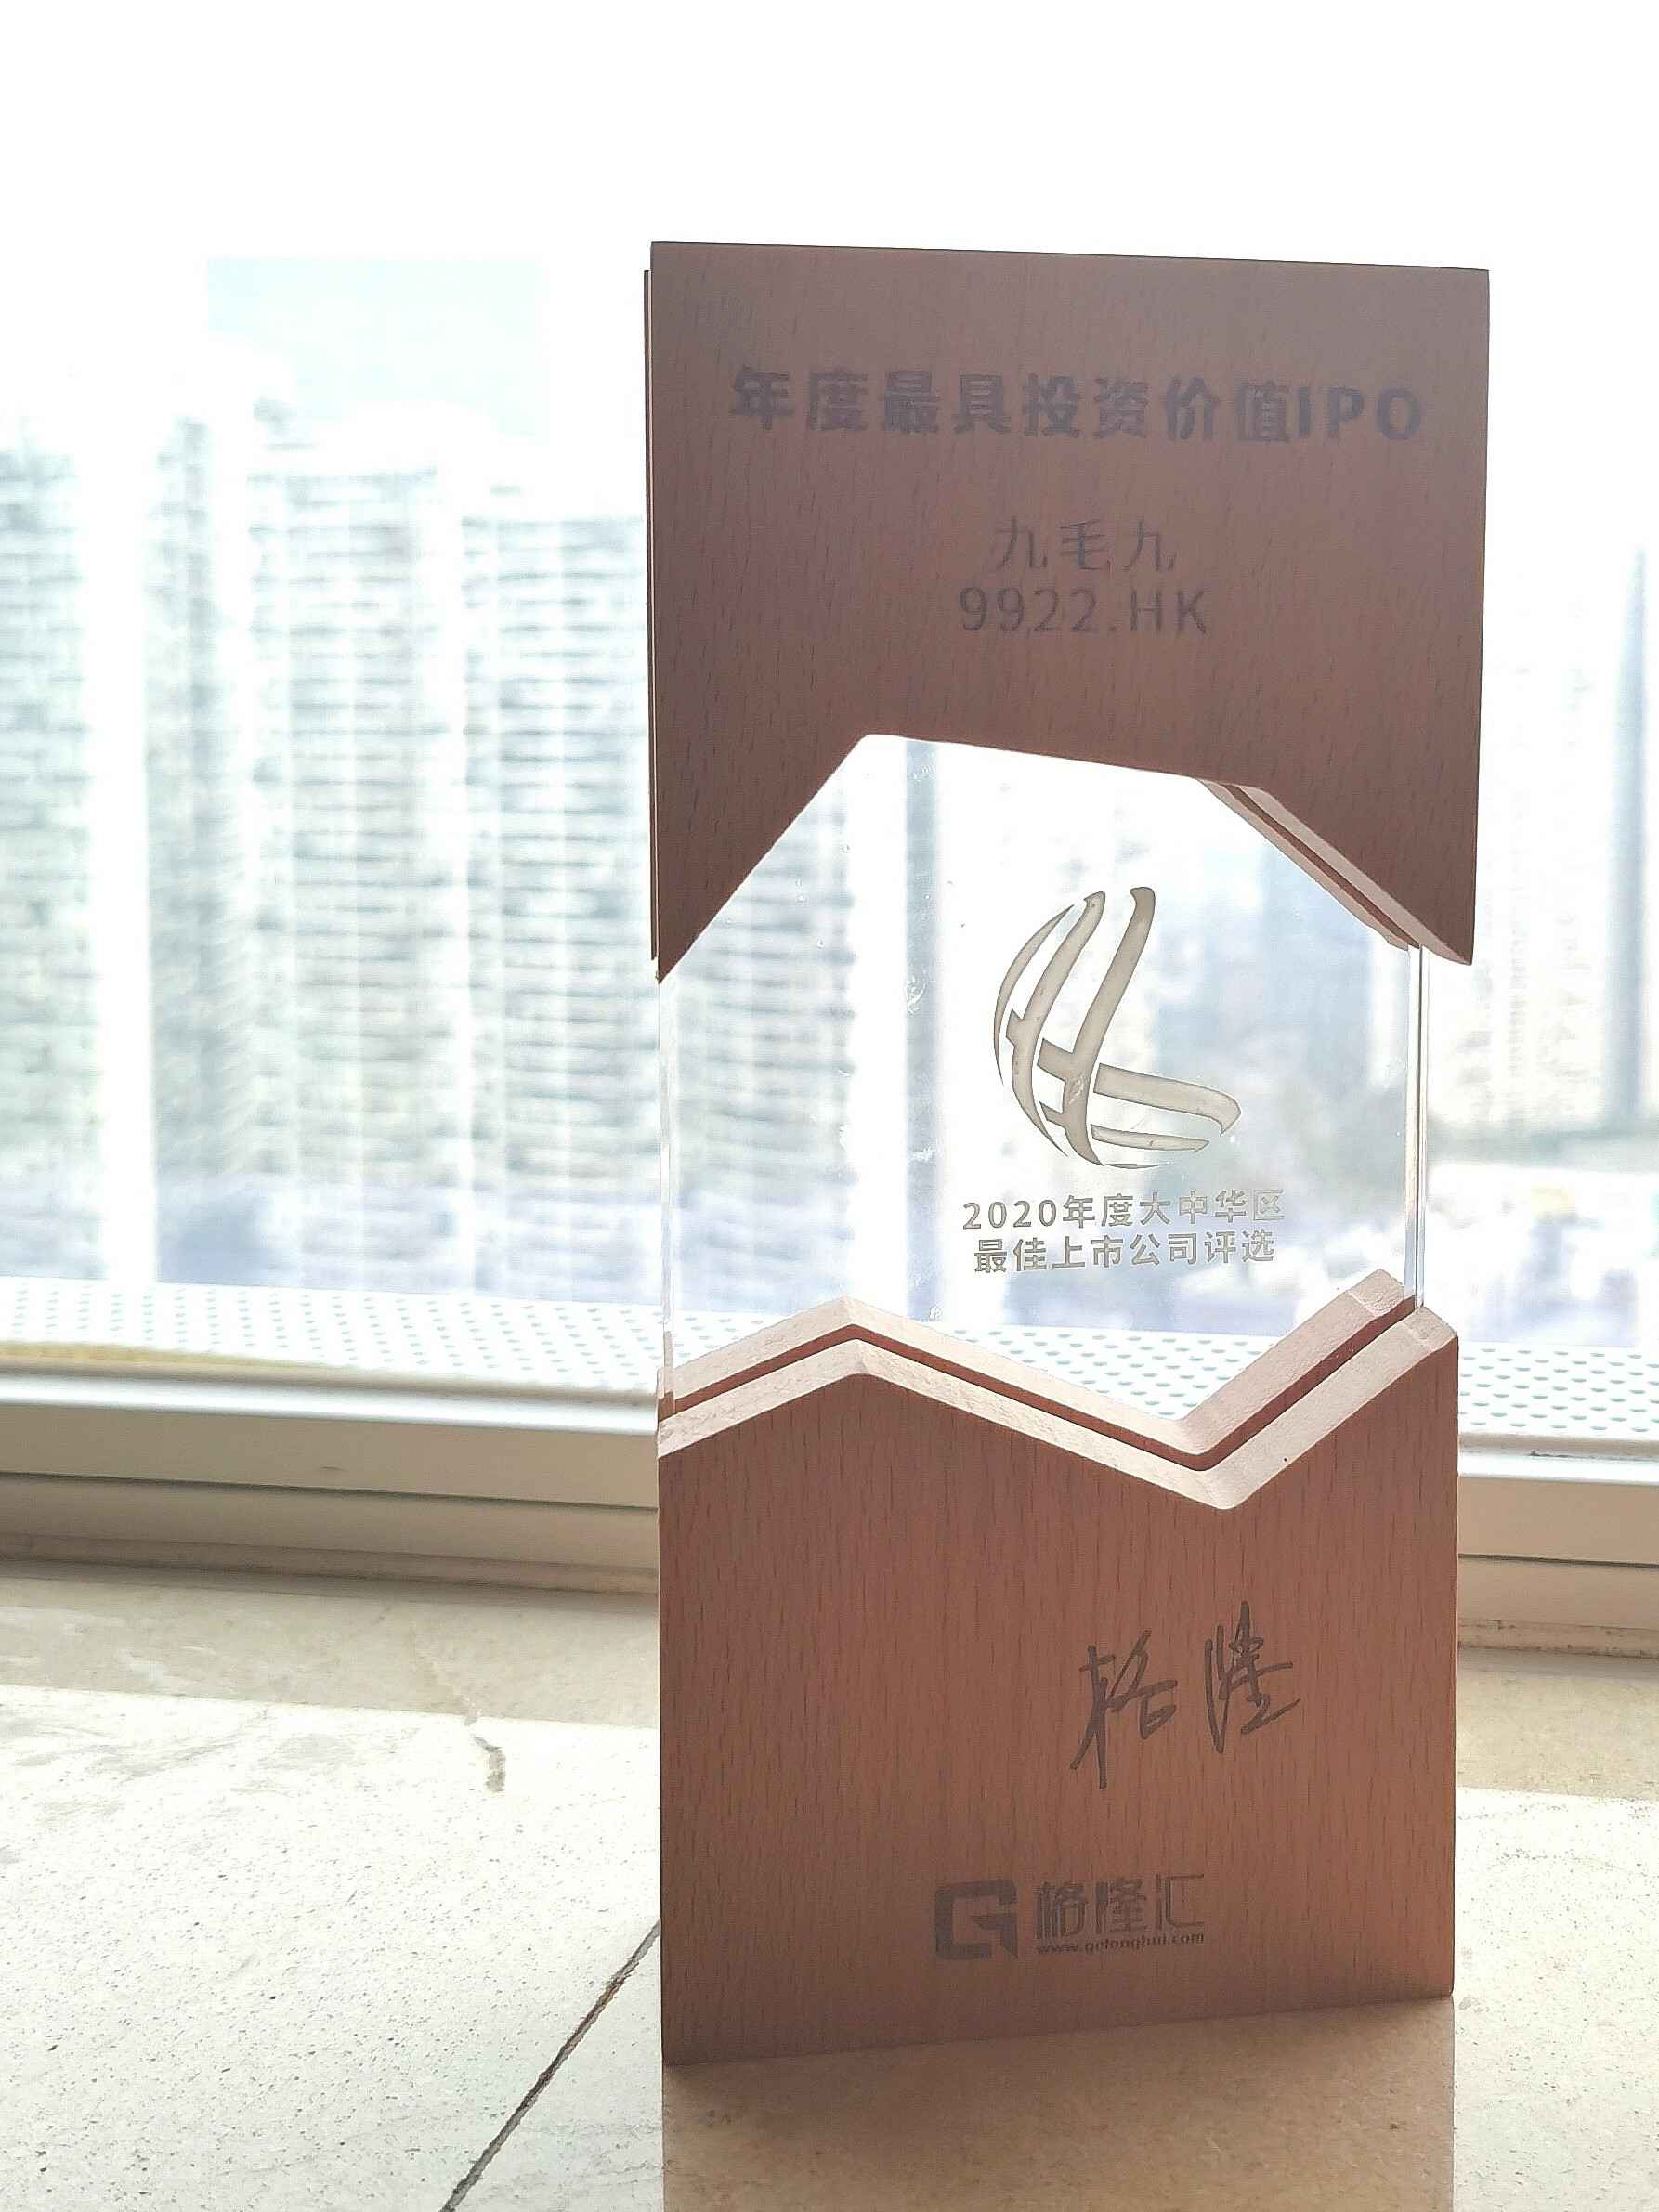 皇冠手机APP官网(中国)有限公司官网荣获“2020年度最具投资价值IPO”